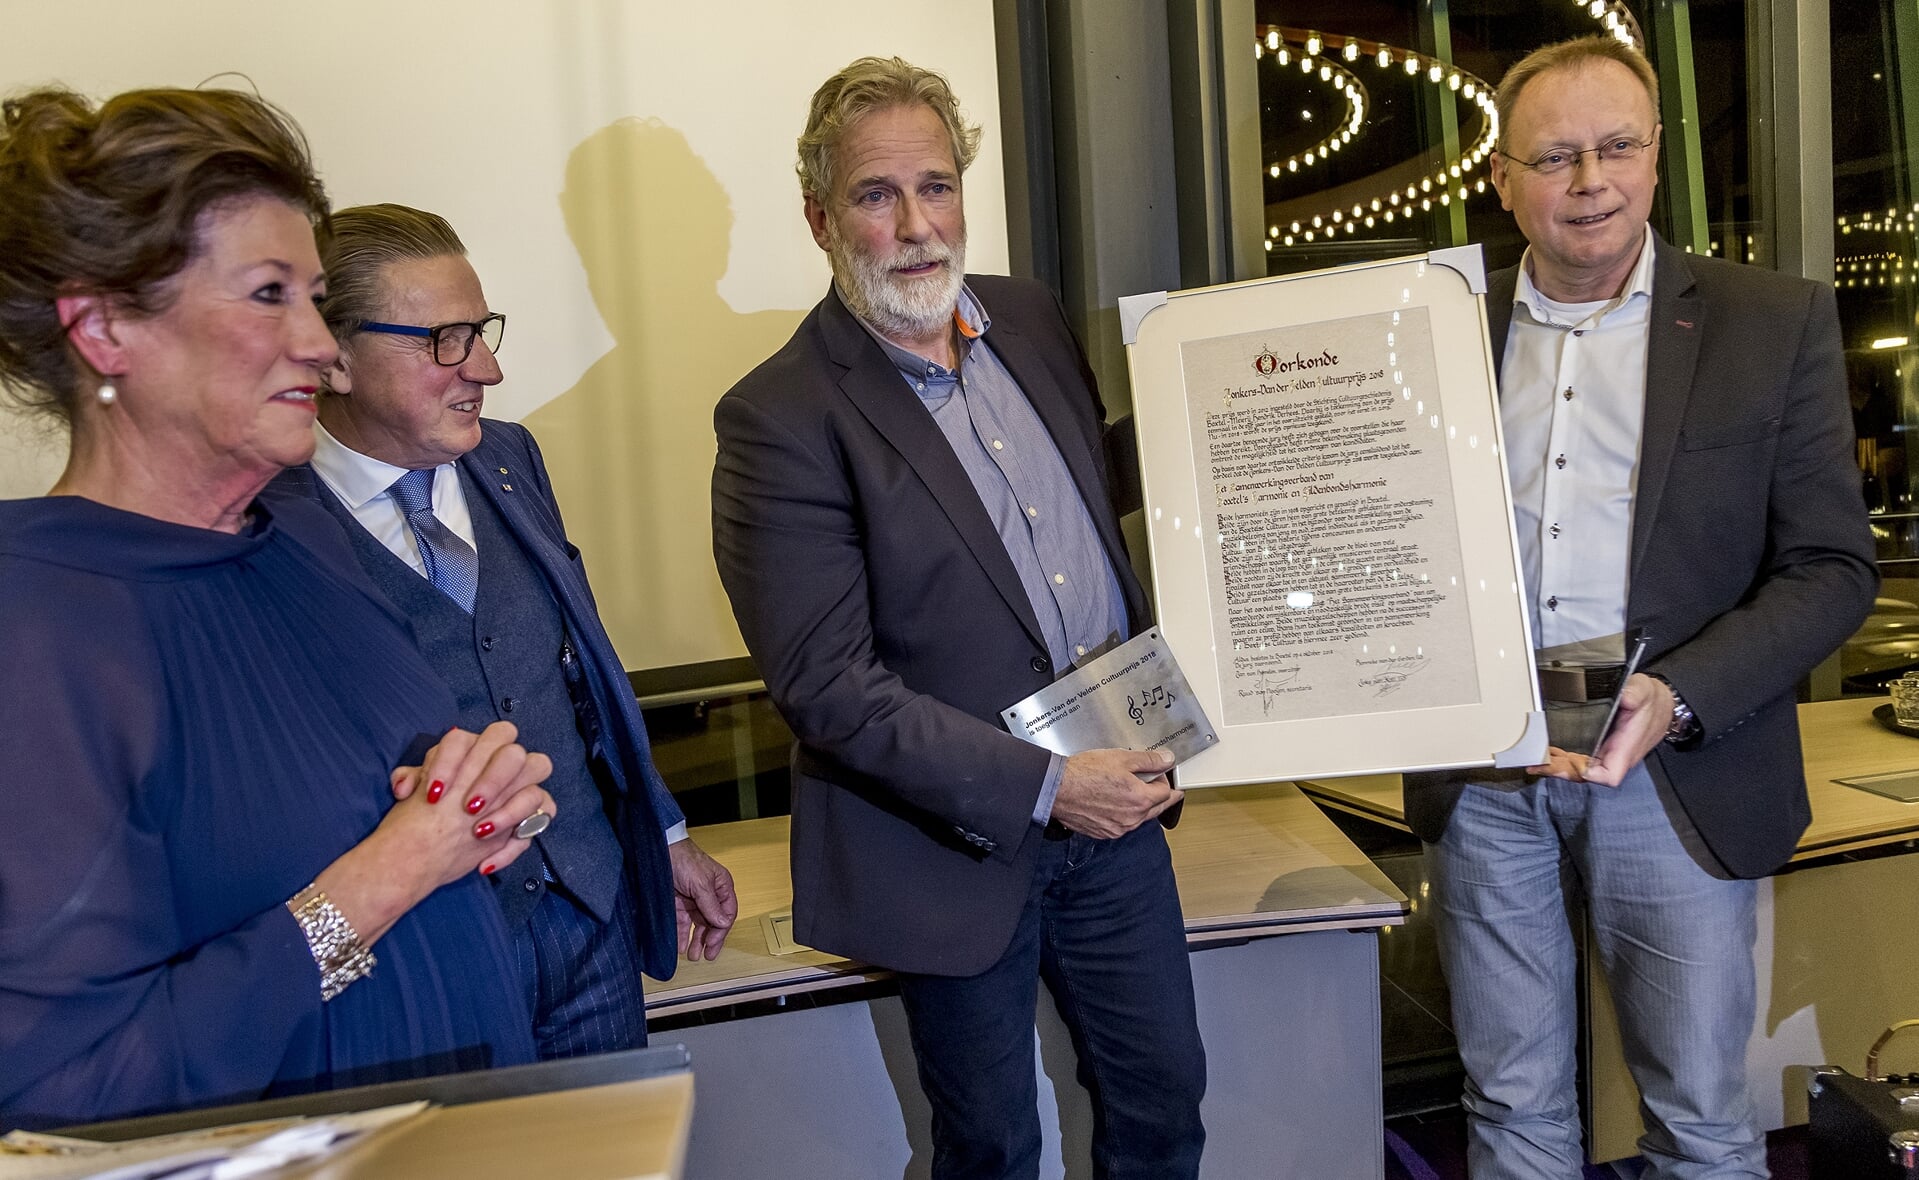 De voorzitters van de twee Boxtelse harmonieën nemen de oorkonde in ontvangst die hoort bij de Jonkers- van der Velden Cultuurprijs 2018. V.l.n.r. Ine en Ton Jonkers- van der Velden, Paul van Alphen en Jan de Koning.